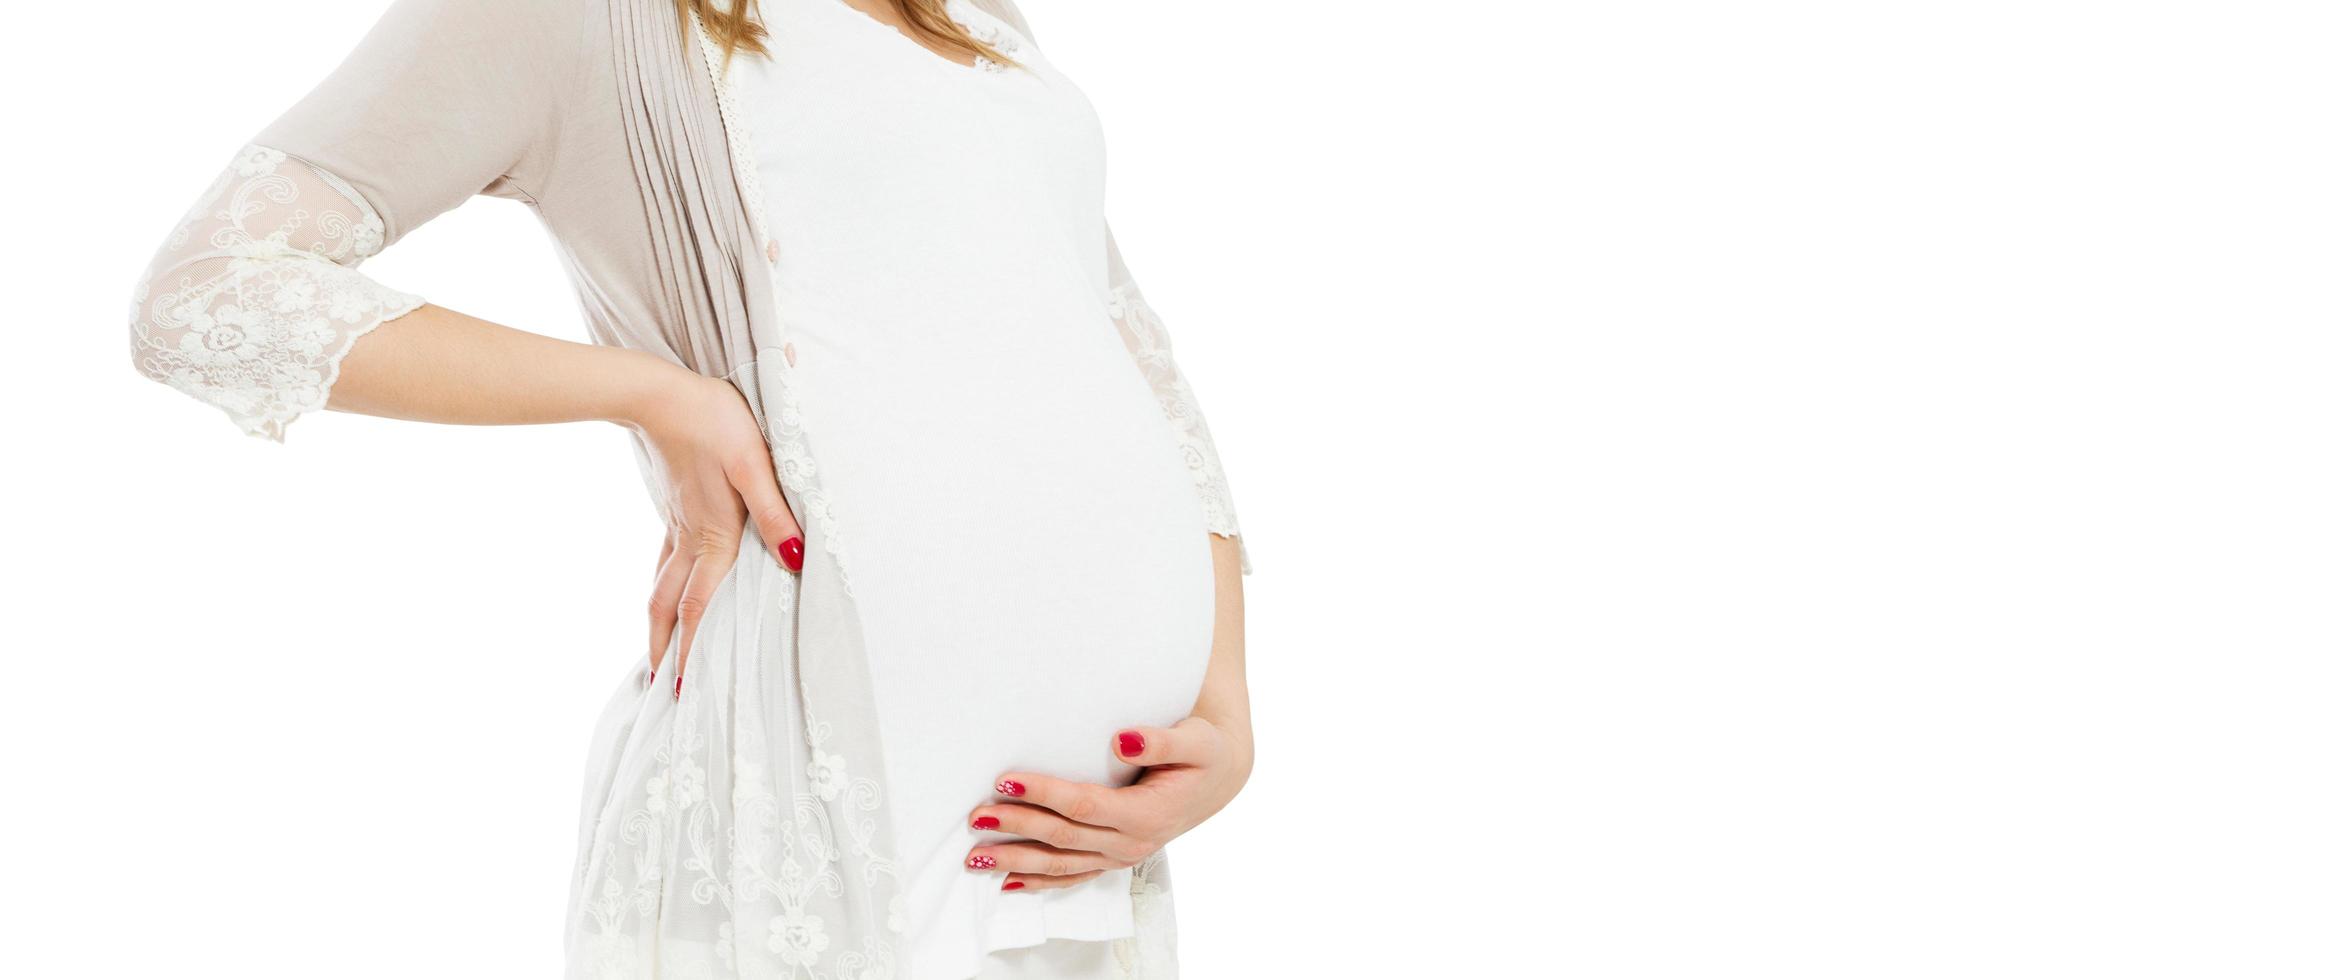 jolie jeune femme enceinte debout sur fond blanc et touche le ventre de femme enceinte - image recadrée. photo